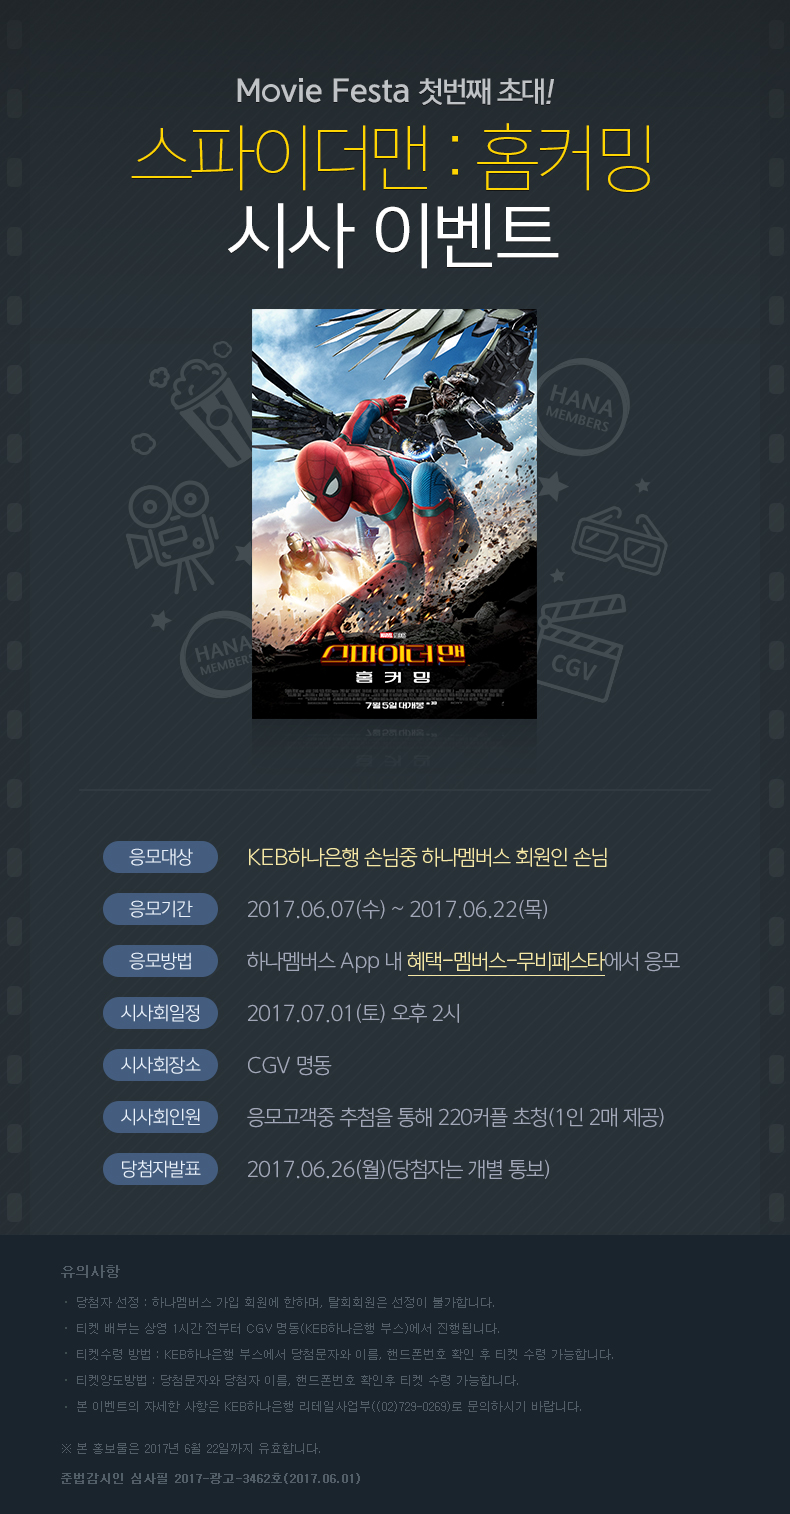 Movie Festa 첫번째 초대! 영화 스파이더맨 : 홈커밍